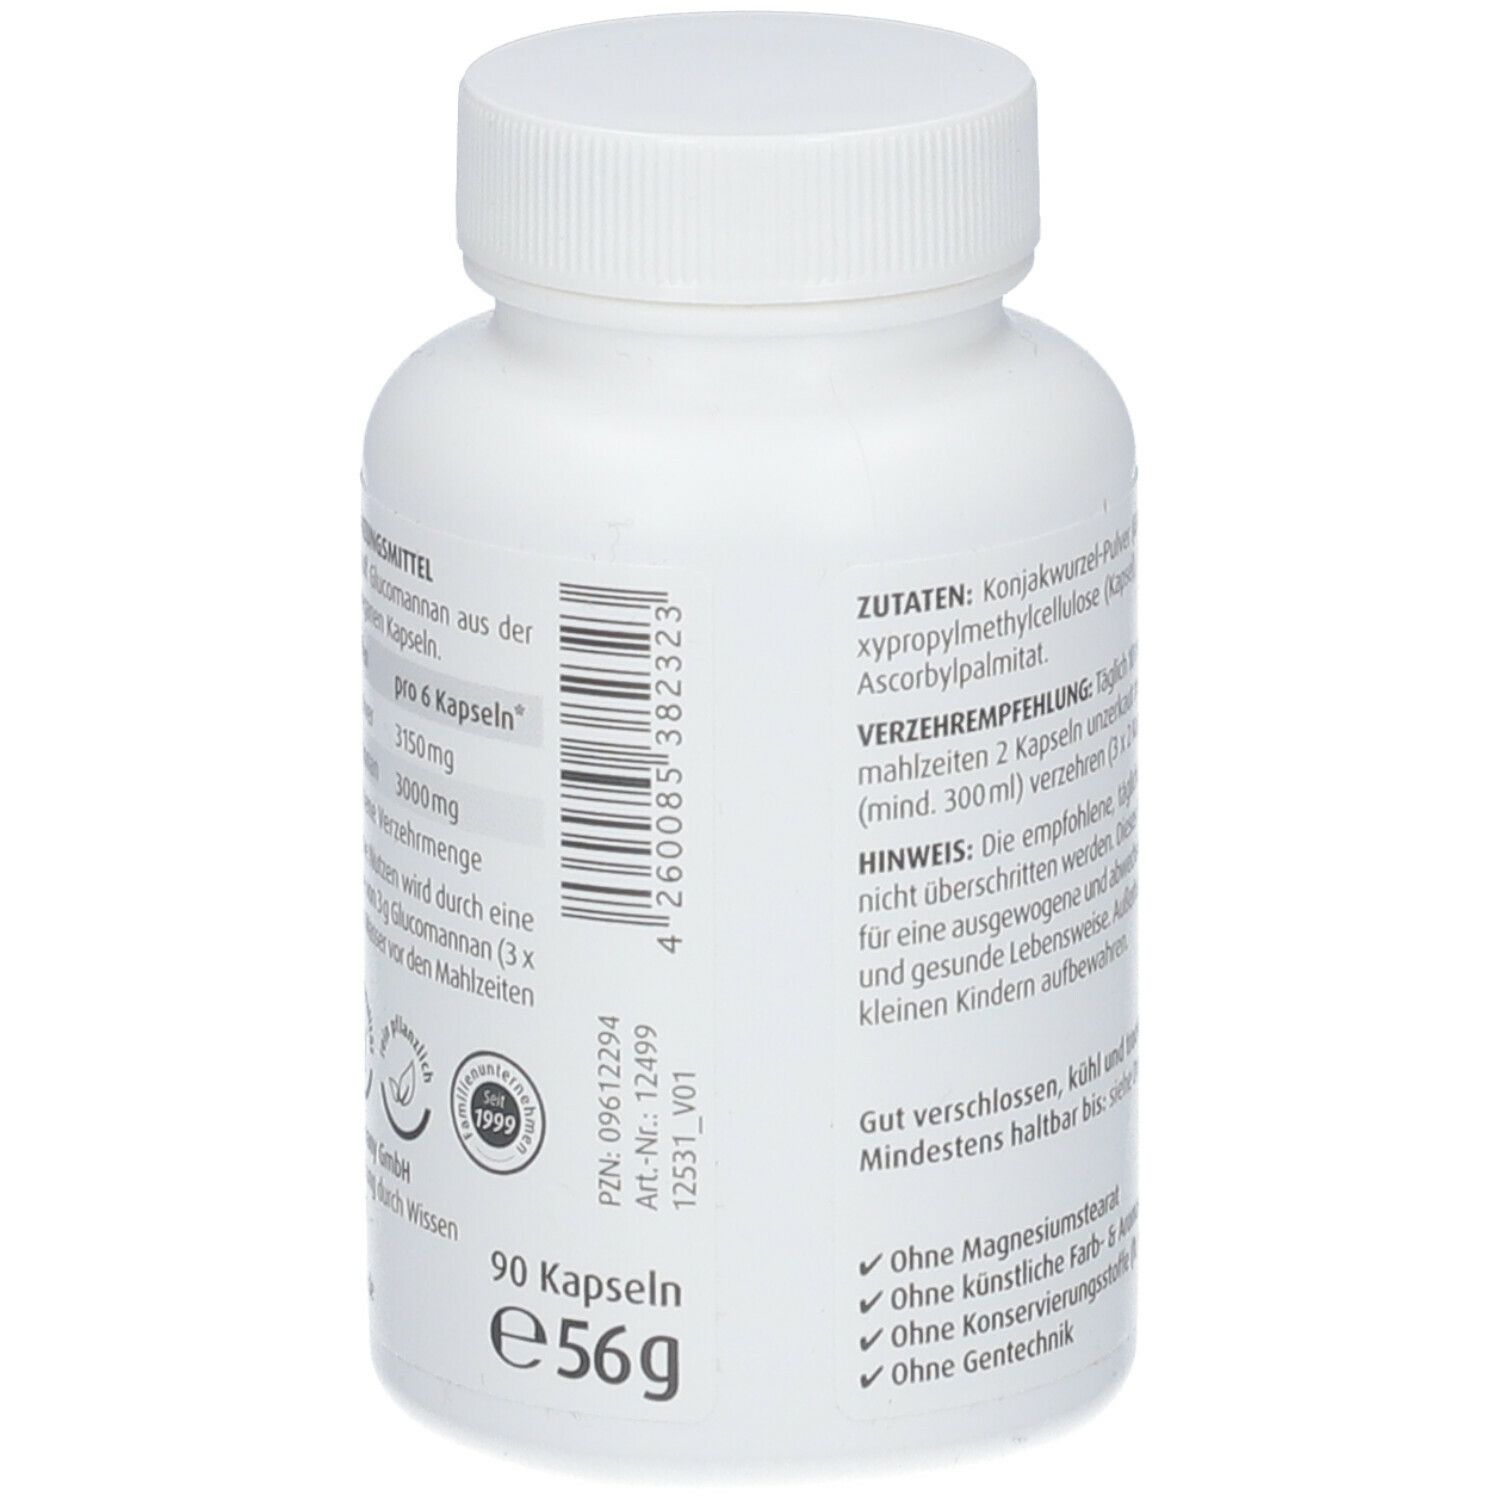 ZeinPharma® Glucomannan Sättigungskapseln 500 mg